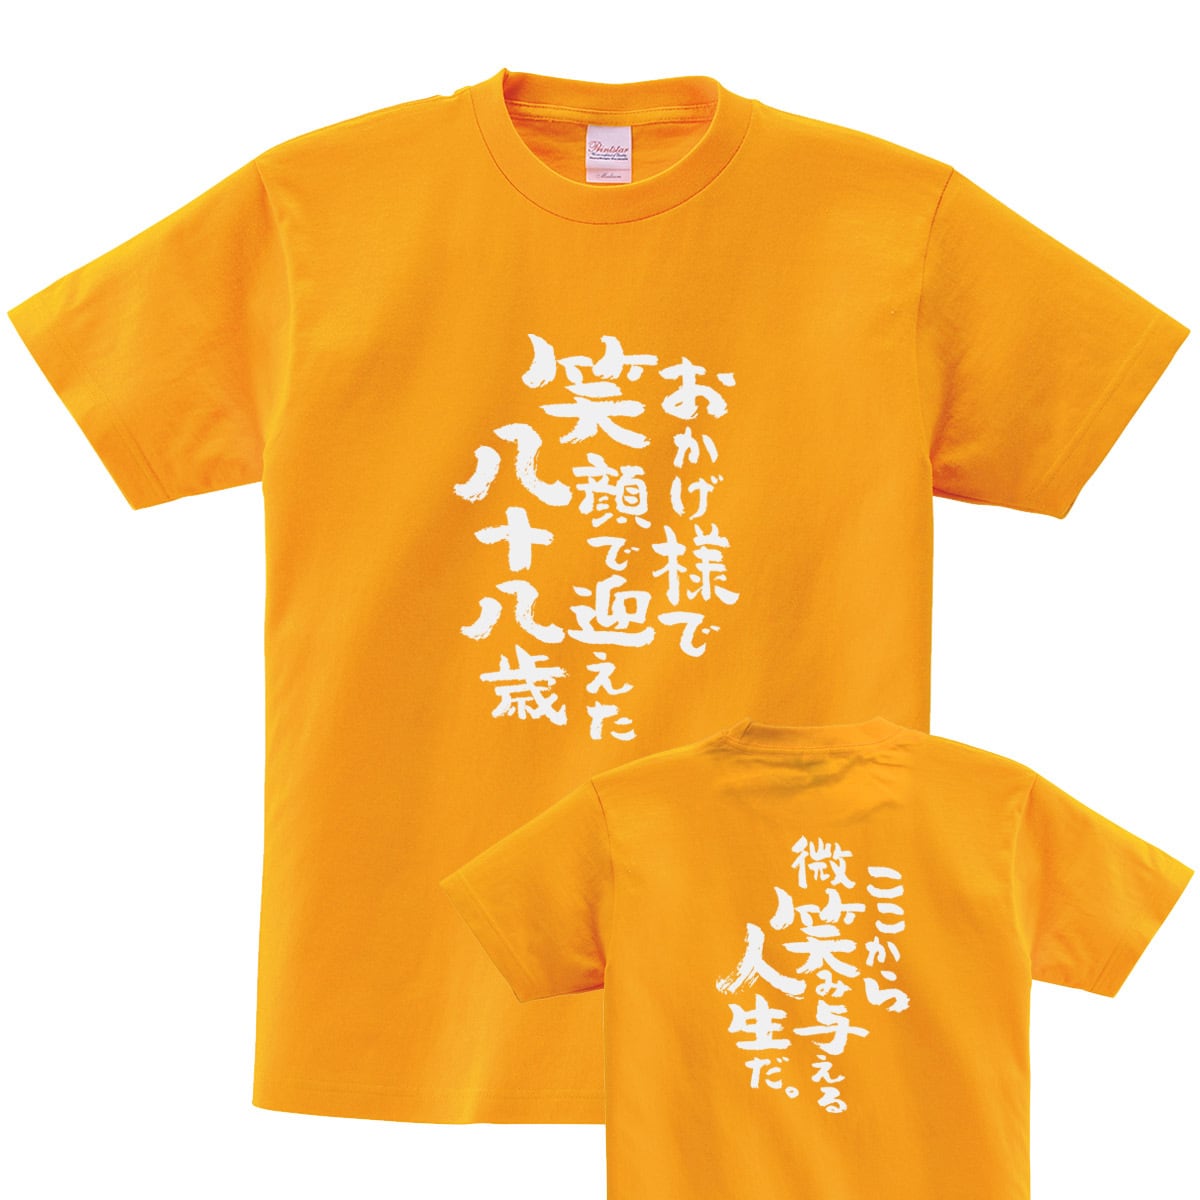 米寿祝い おかげ様で笑顔で迎えた八十八歳 Tシャツ ka300-91 米寿 